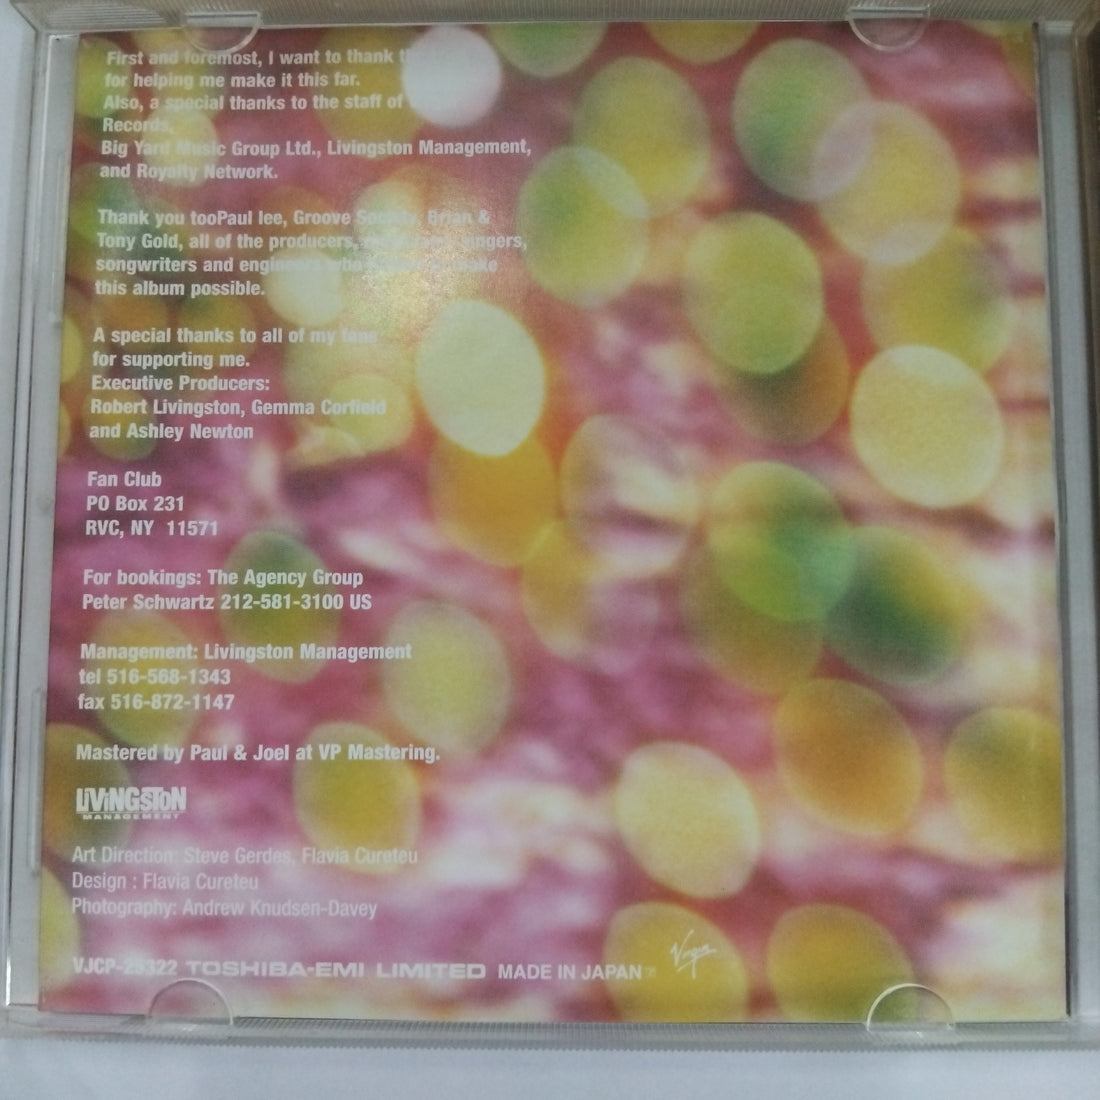 Shaggy - Midnite Lover (CD) (VG+)